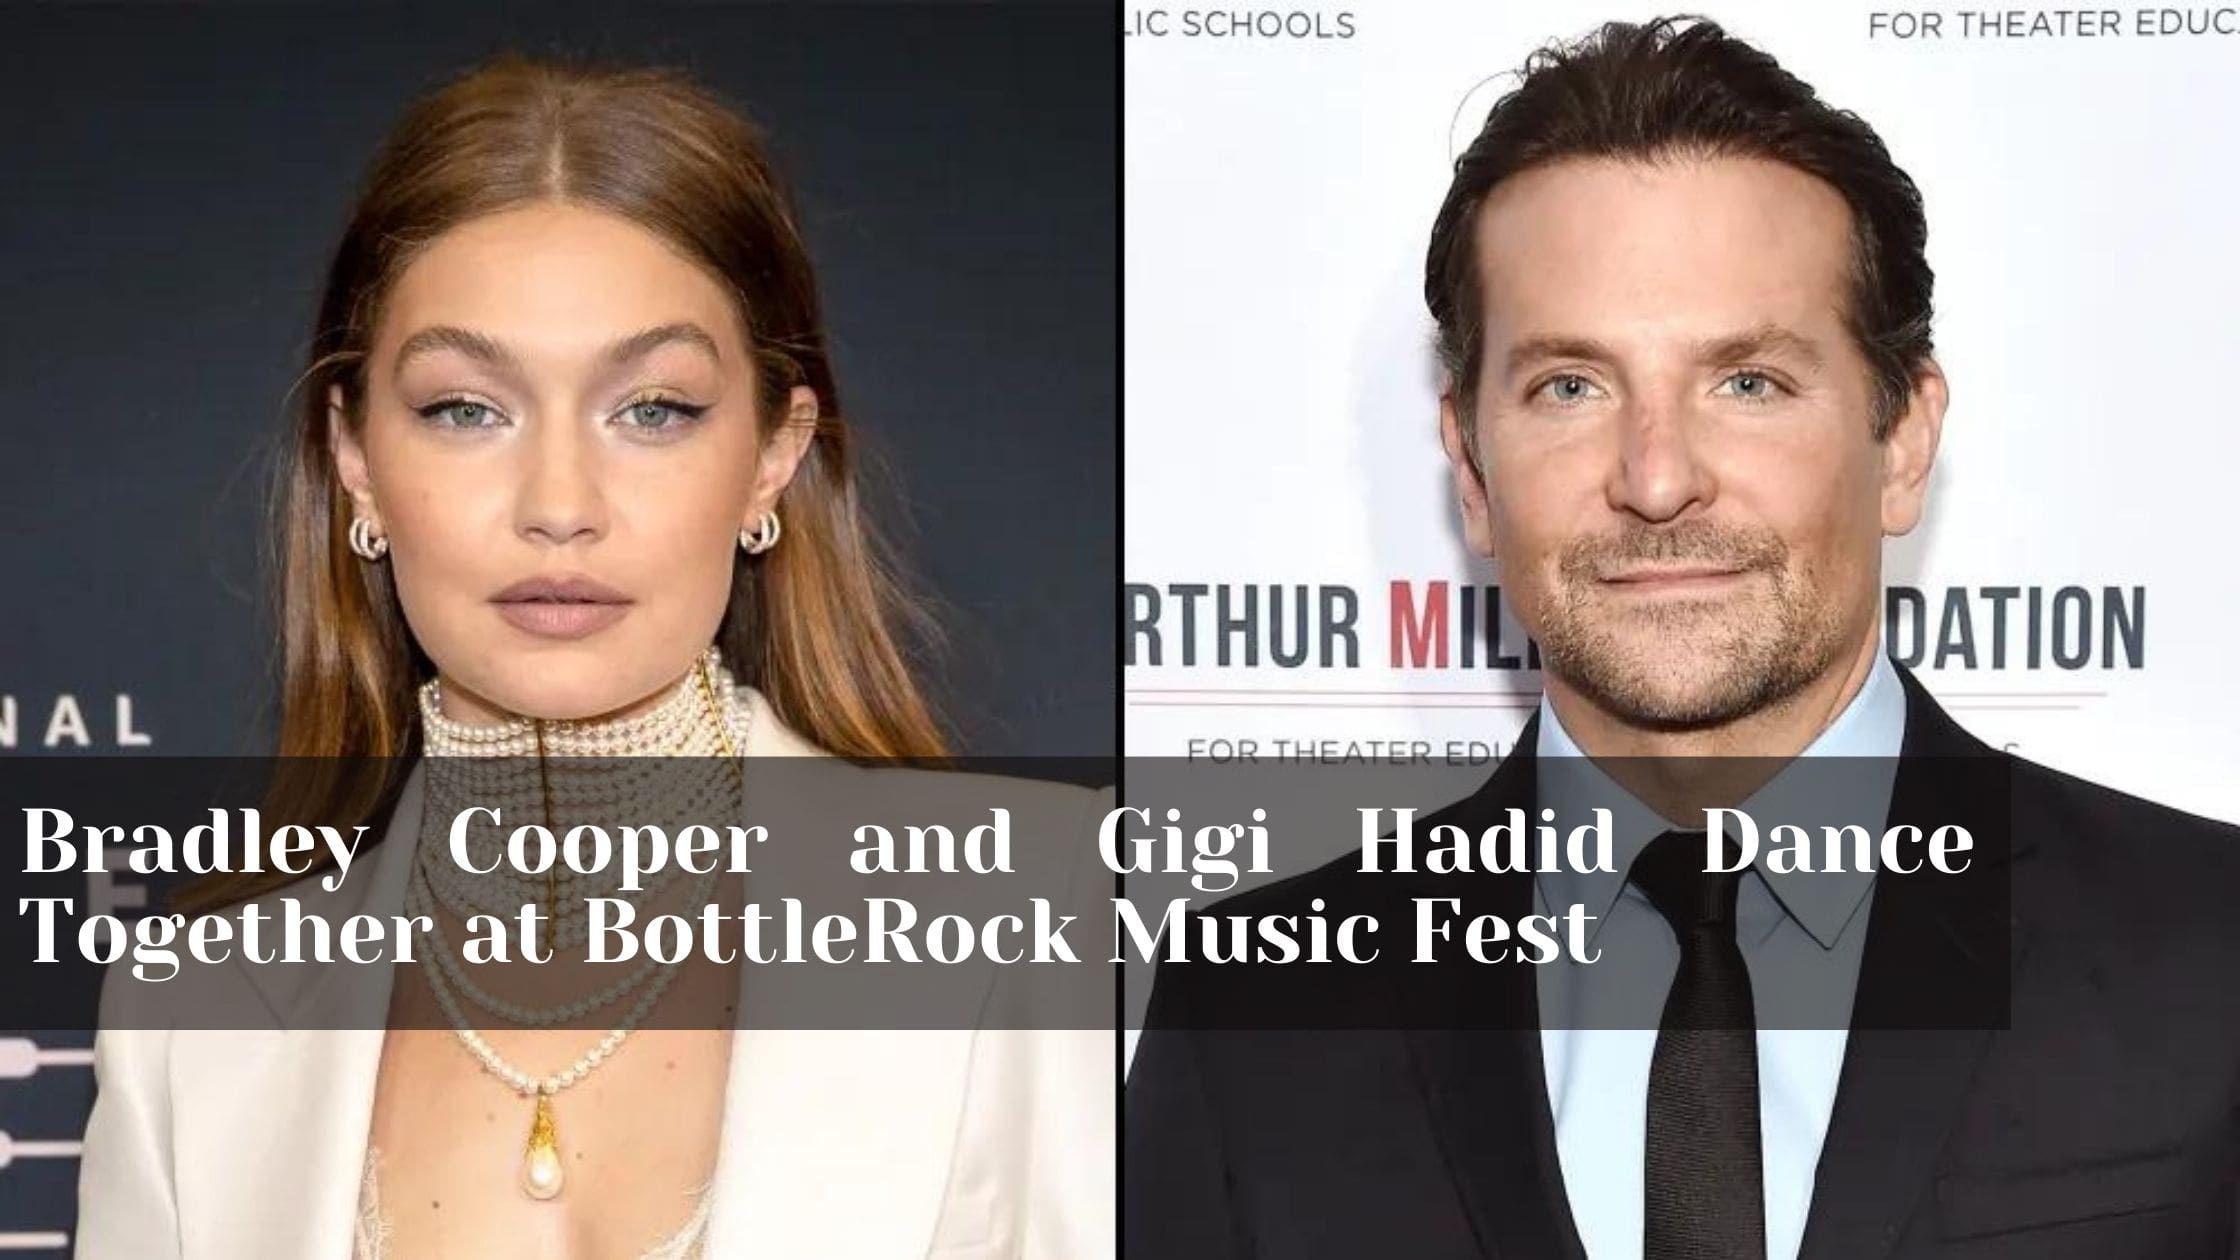 Bradley Cooper and Gigi Hadid Dance Together at BottleRock Music Fest